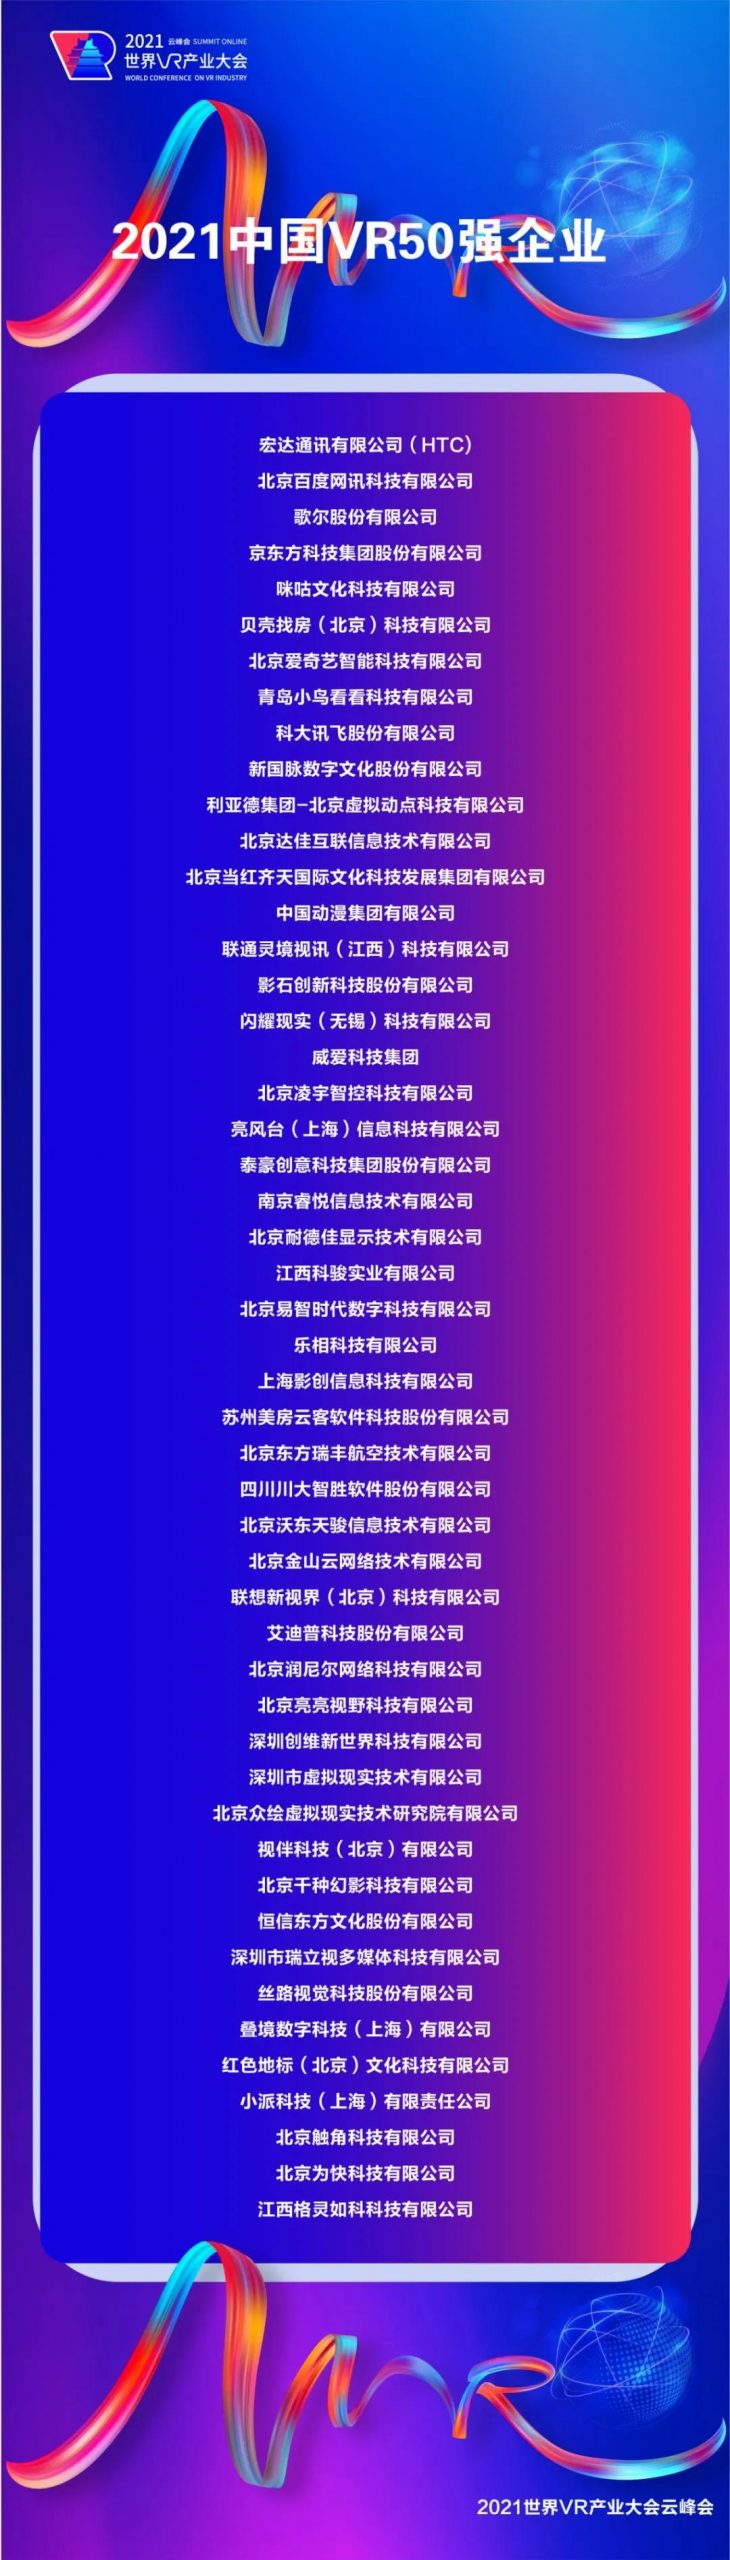 2021中国VR 50强企业名单发布